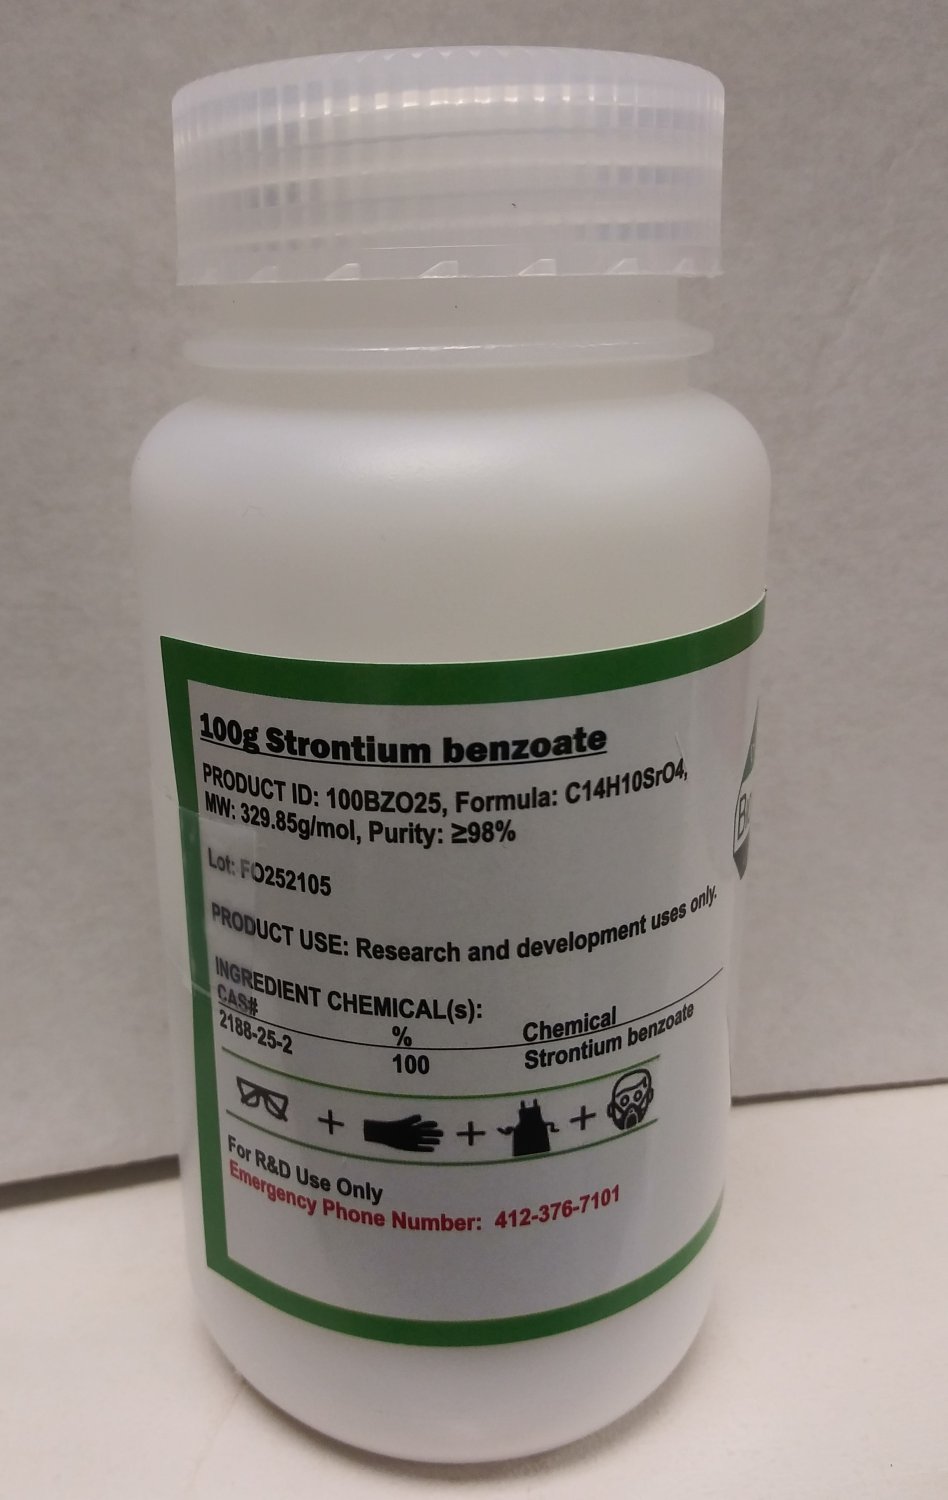 1kg Strontium benzoate